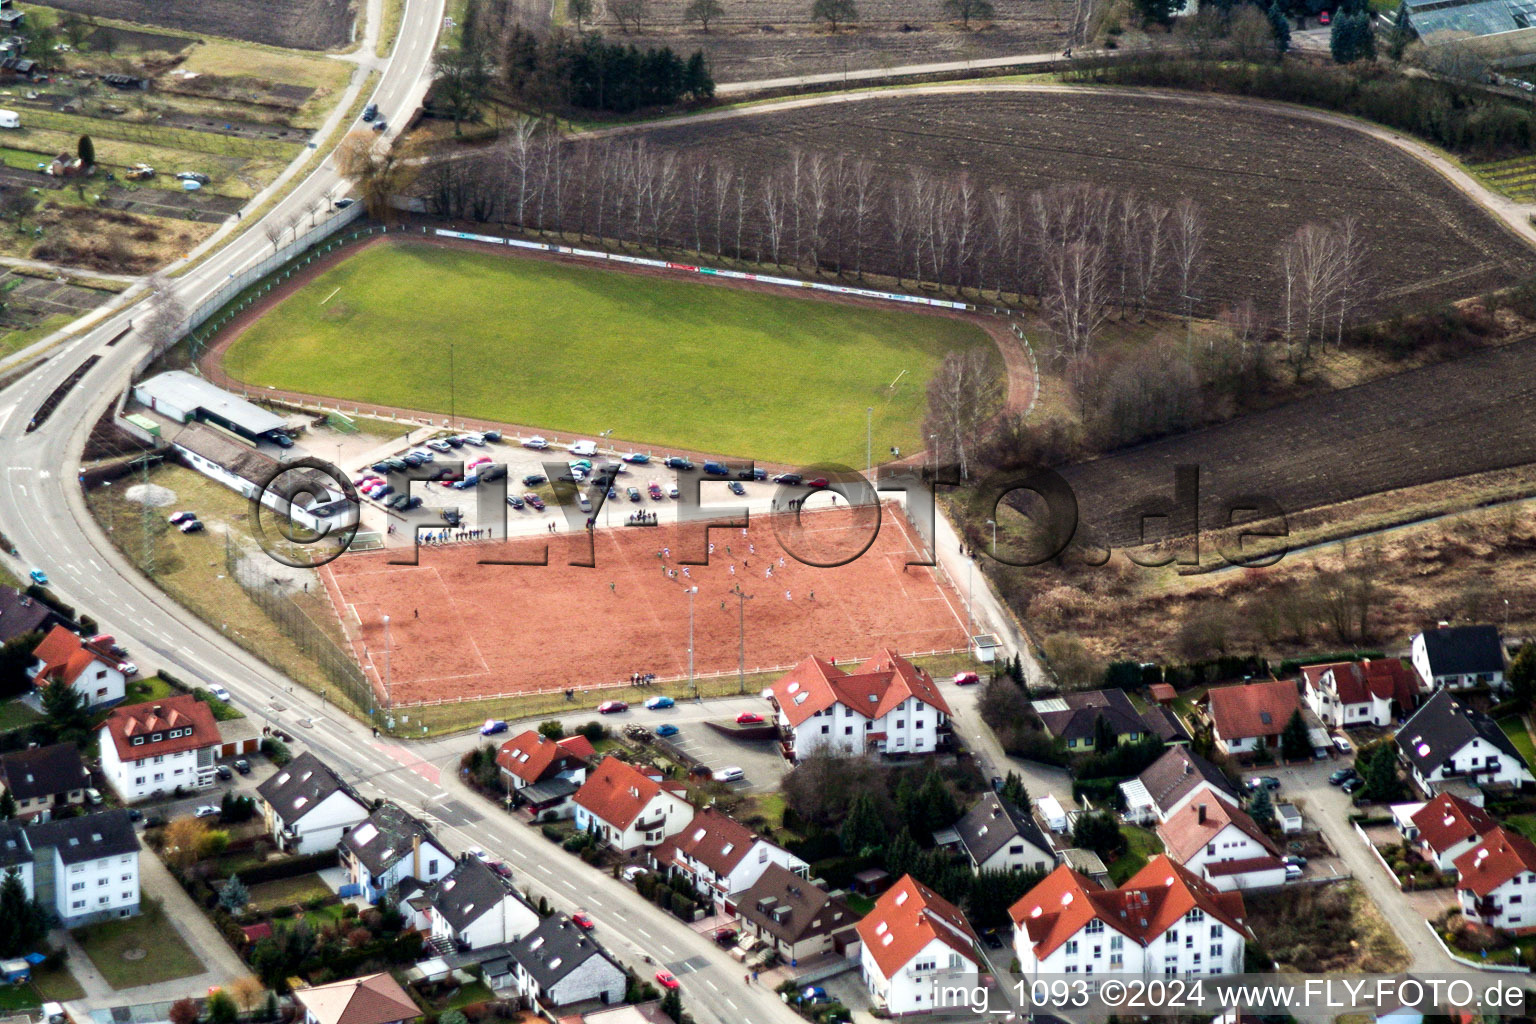 Sportplatz- Fussballplatz in Hagenbach im Bundesland Rheinland-Pfalz, Deutschland